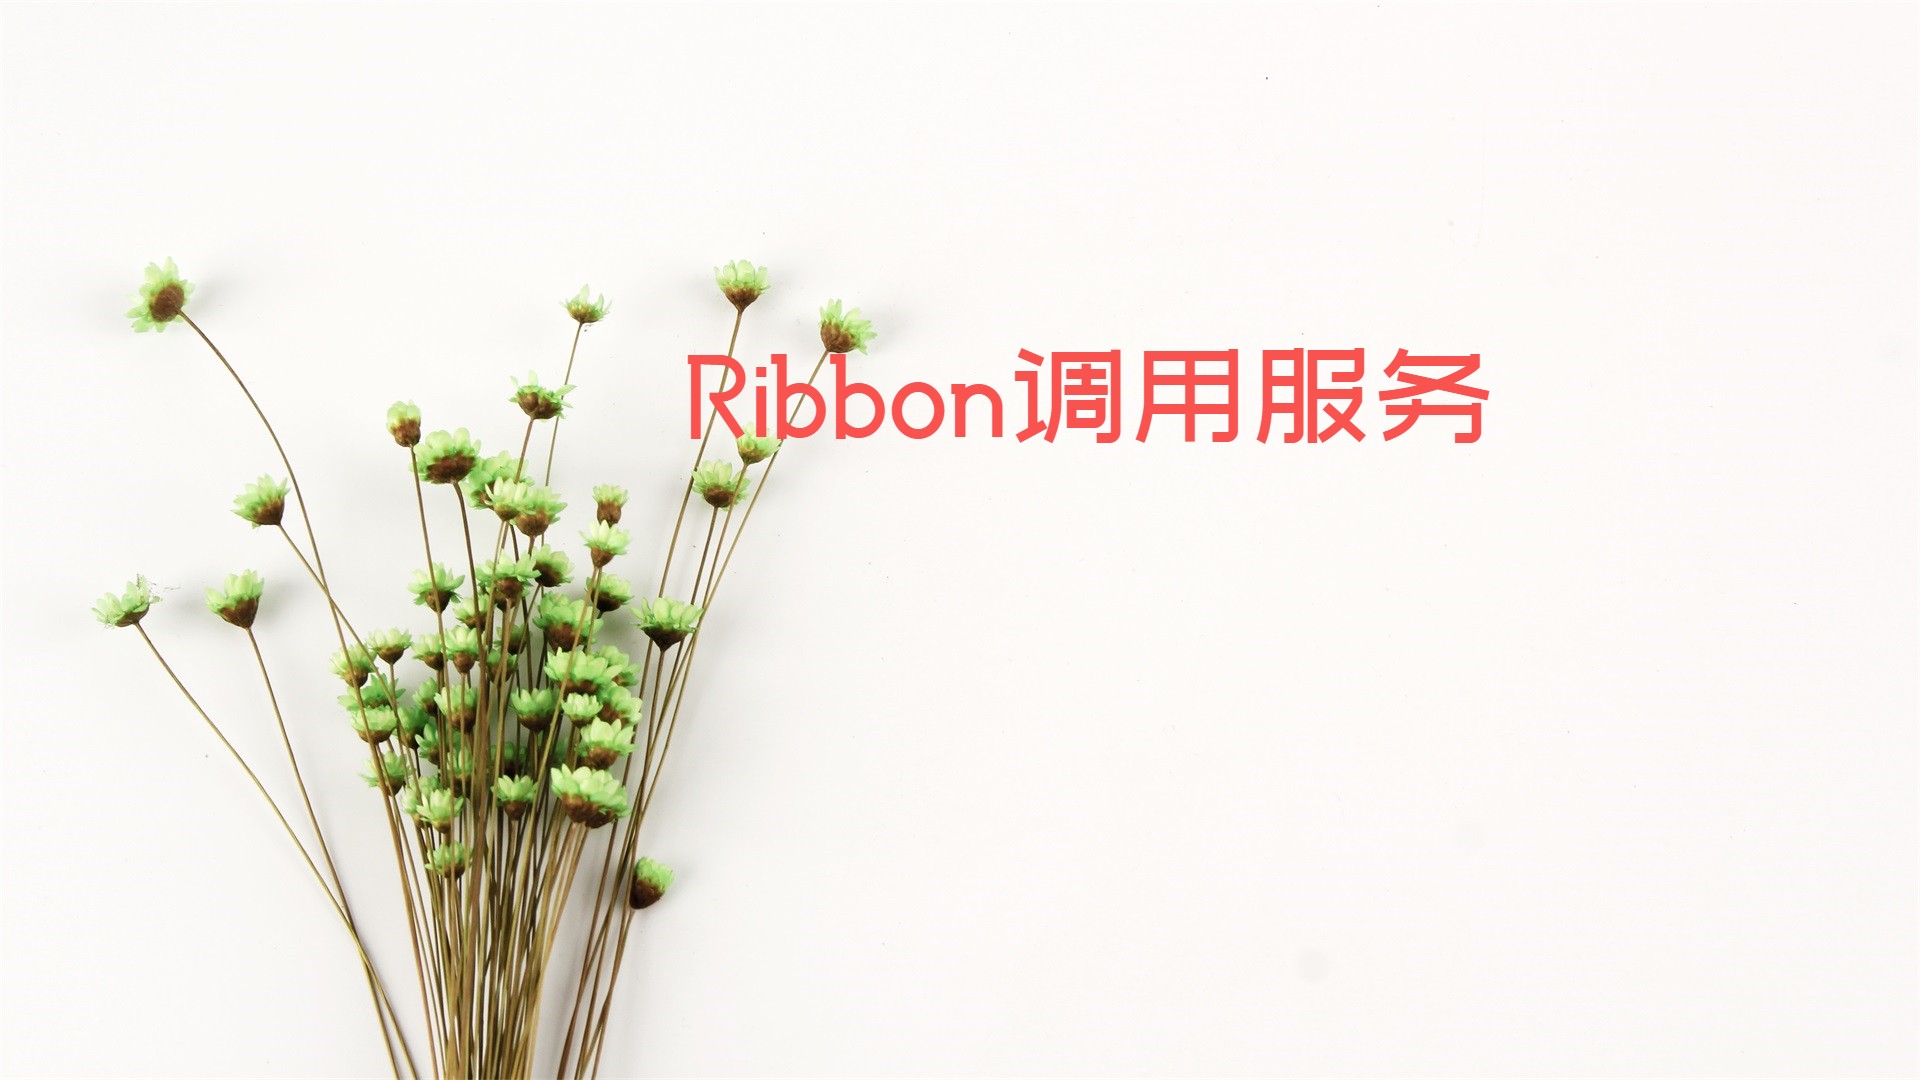 Ribbon调用服务